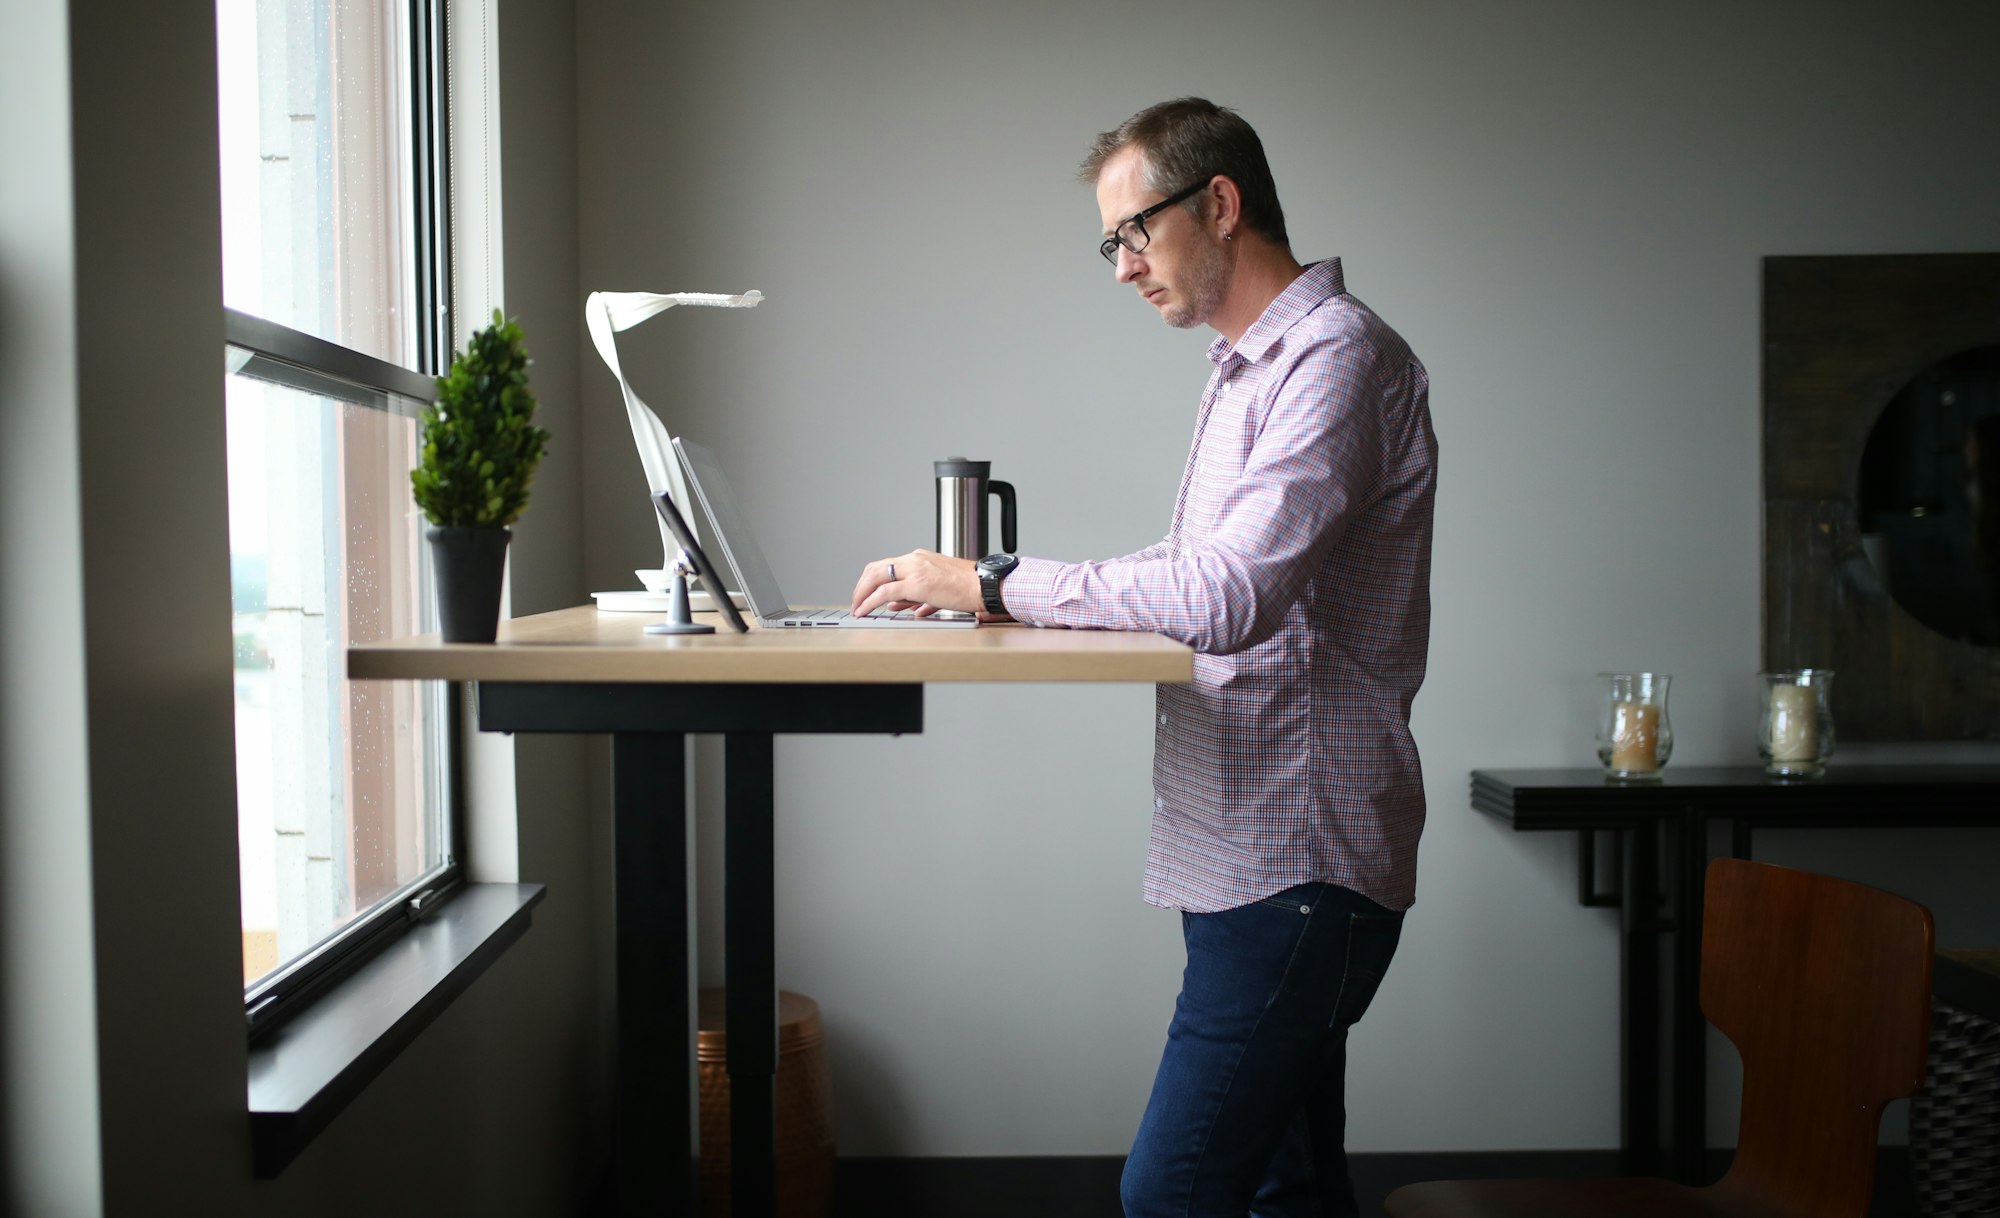 Do Standing Desks Actually Increase Productivity?